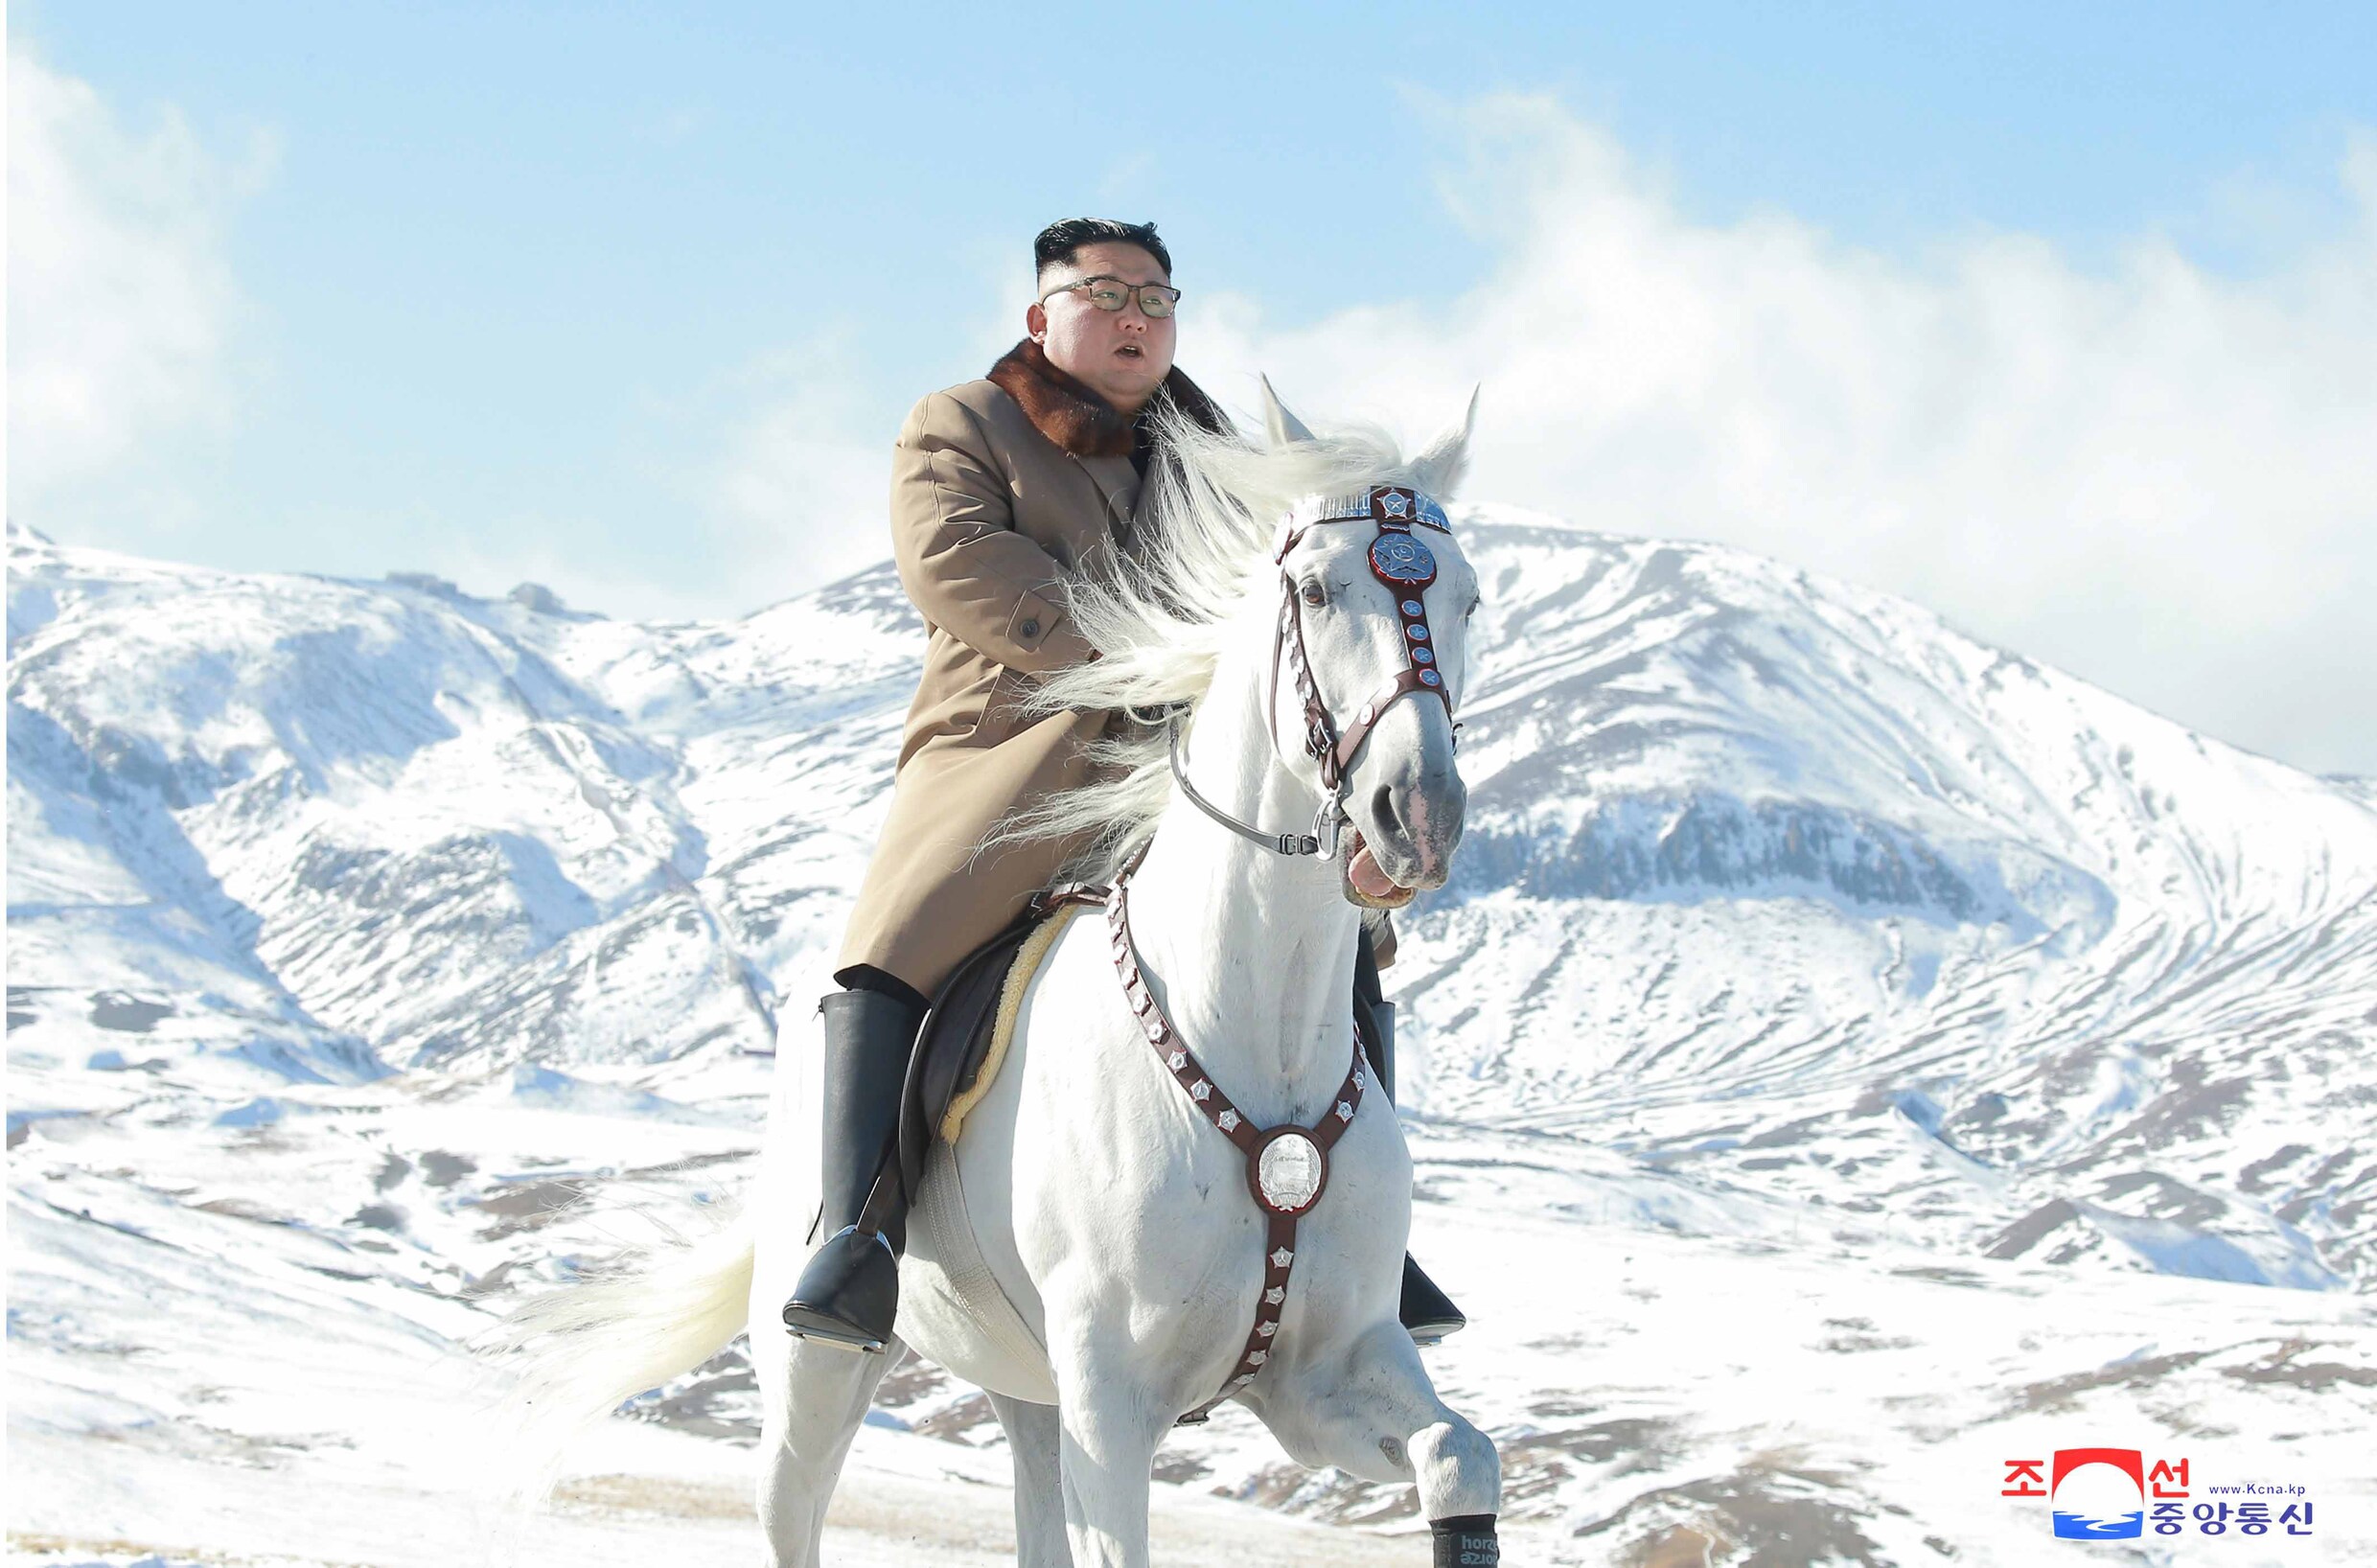 Frozen in Noord-Korea: Kim Jong-Un beklimt heilige berg te paard